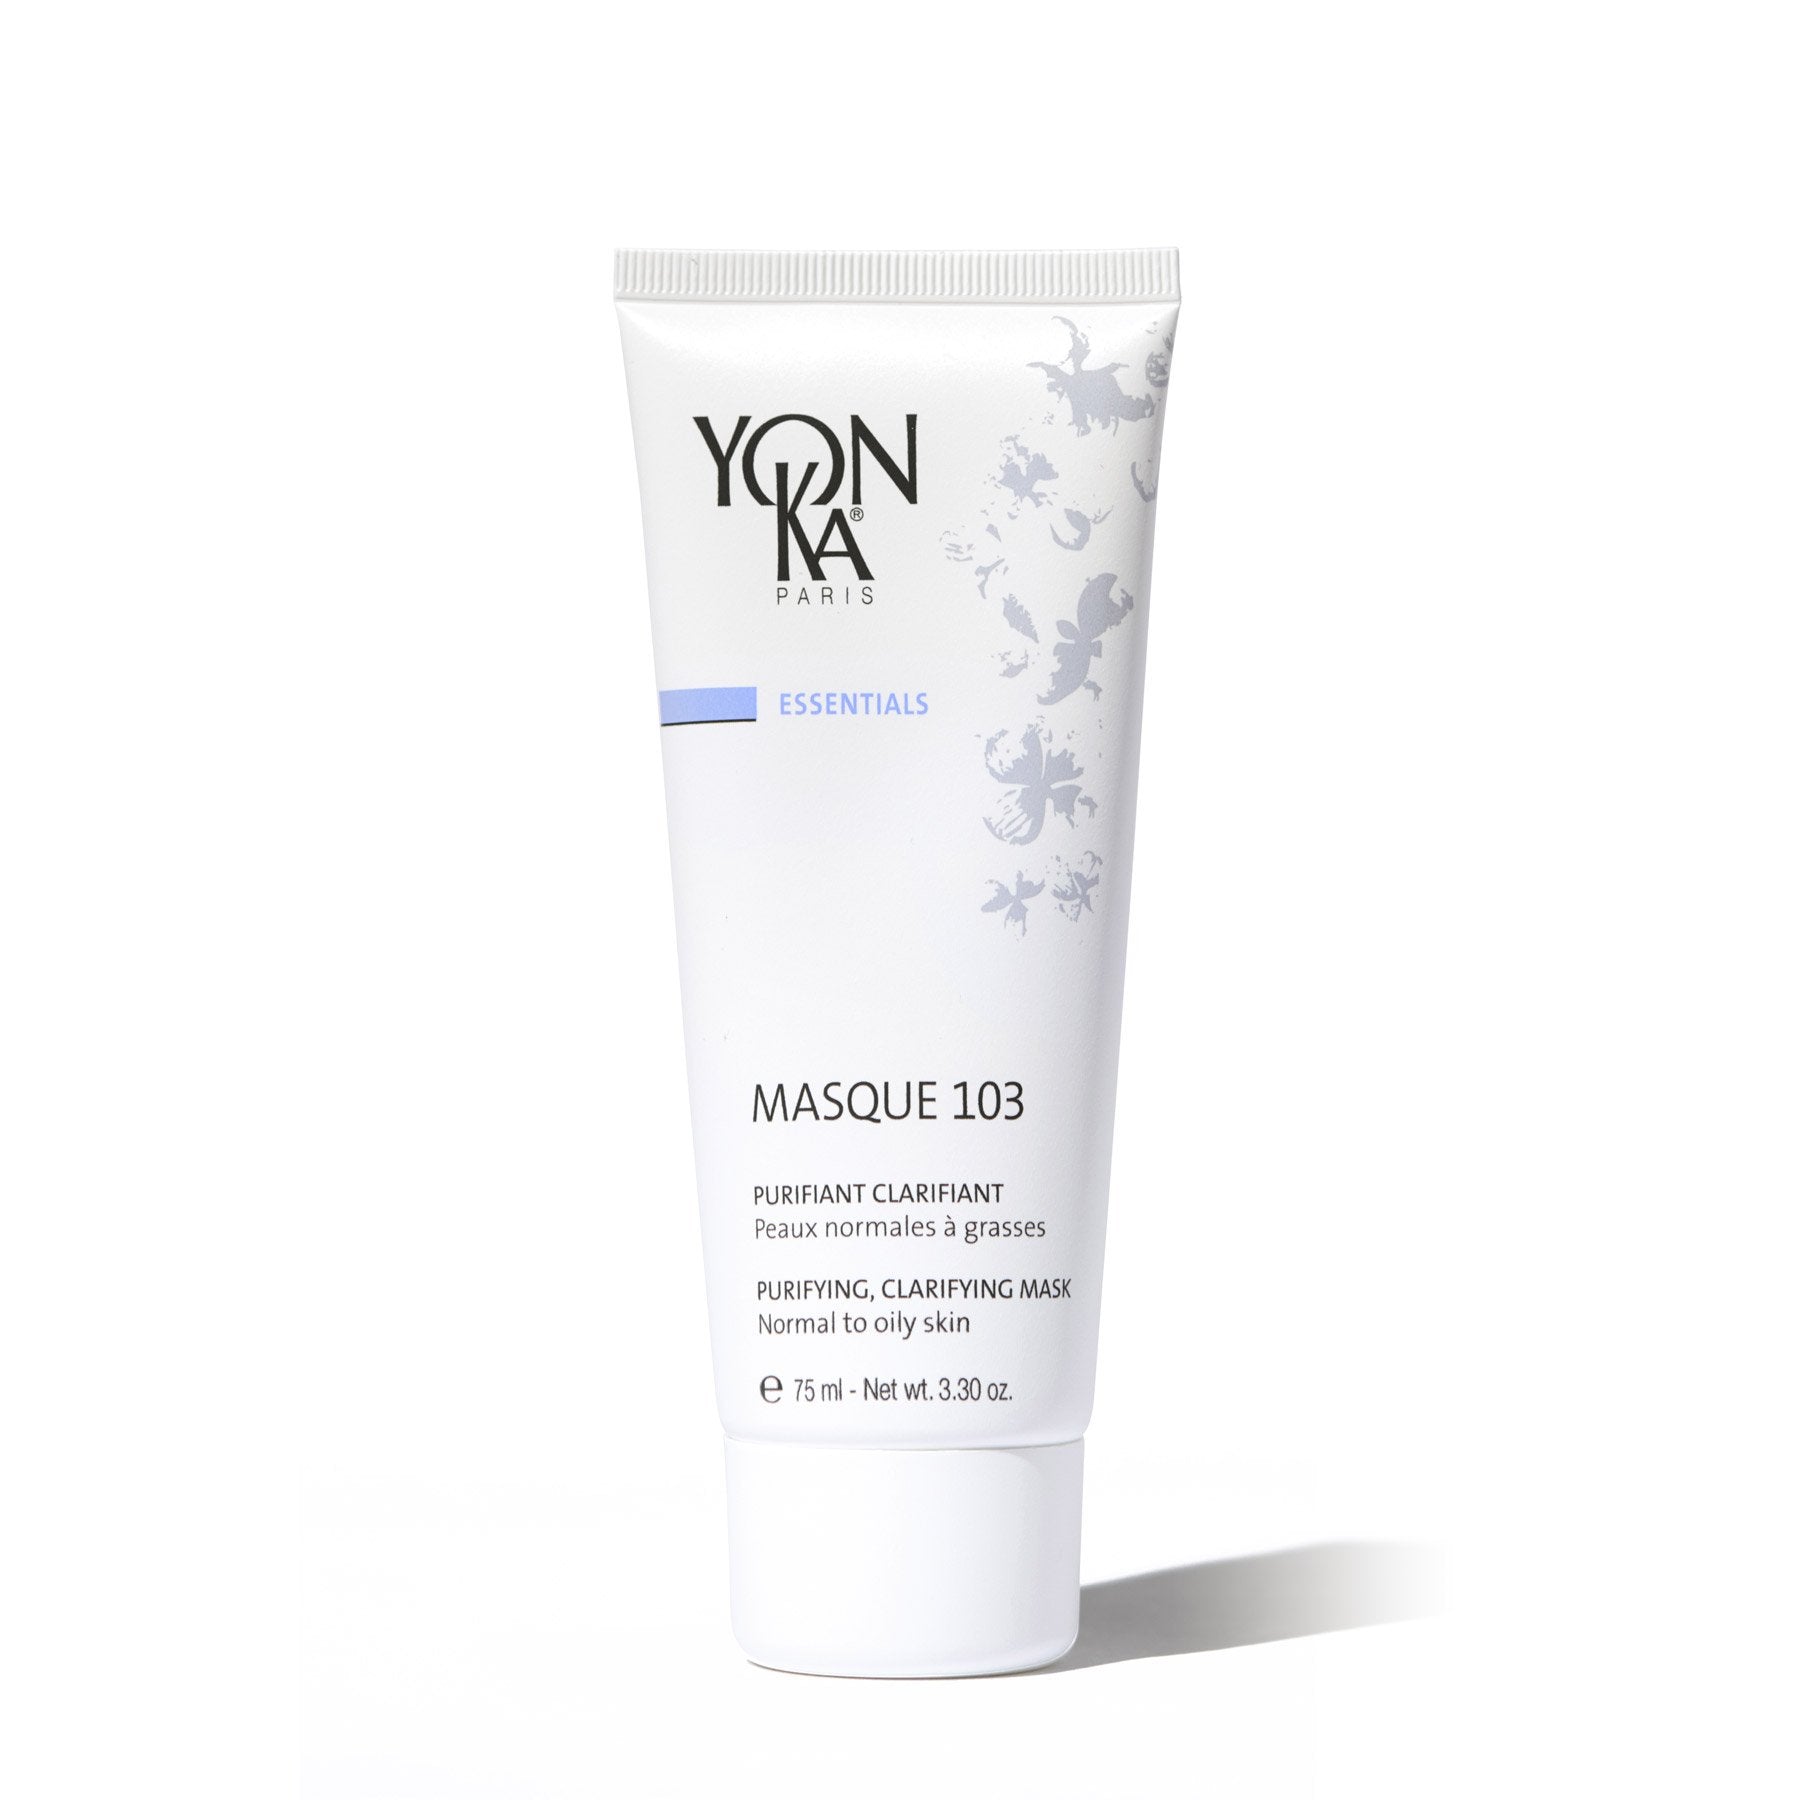 YonKa - Masque 103 Oily to Normal